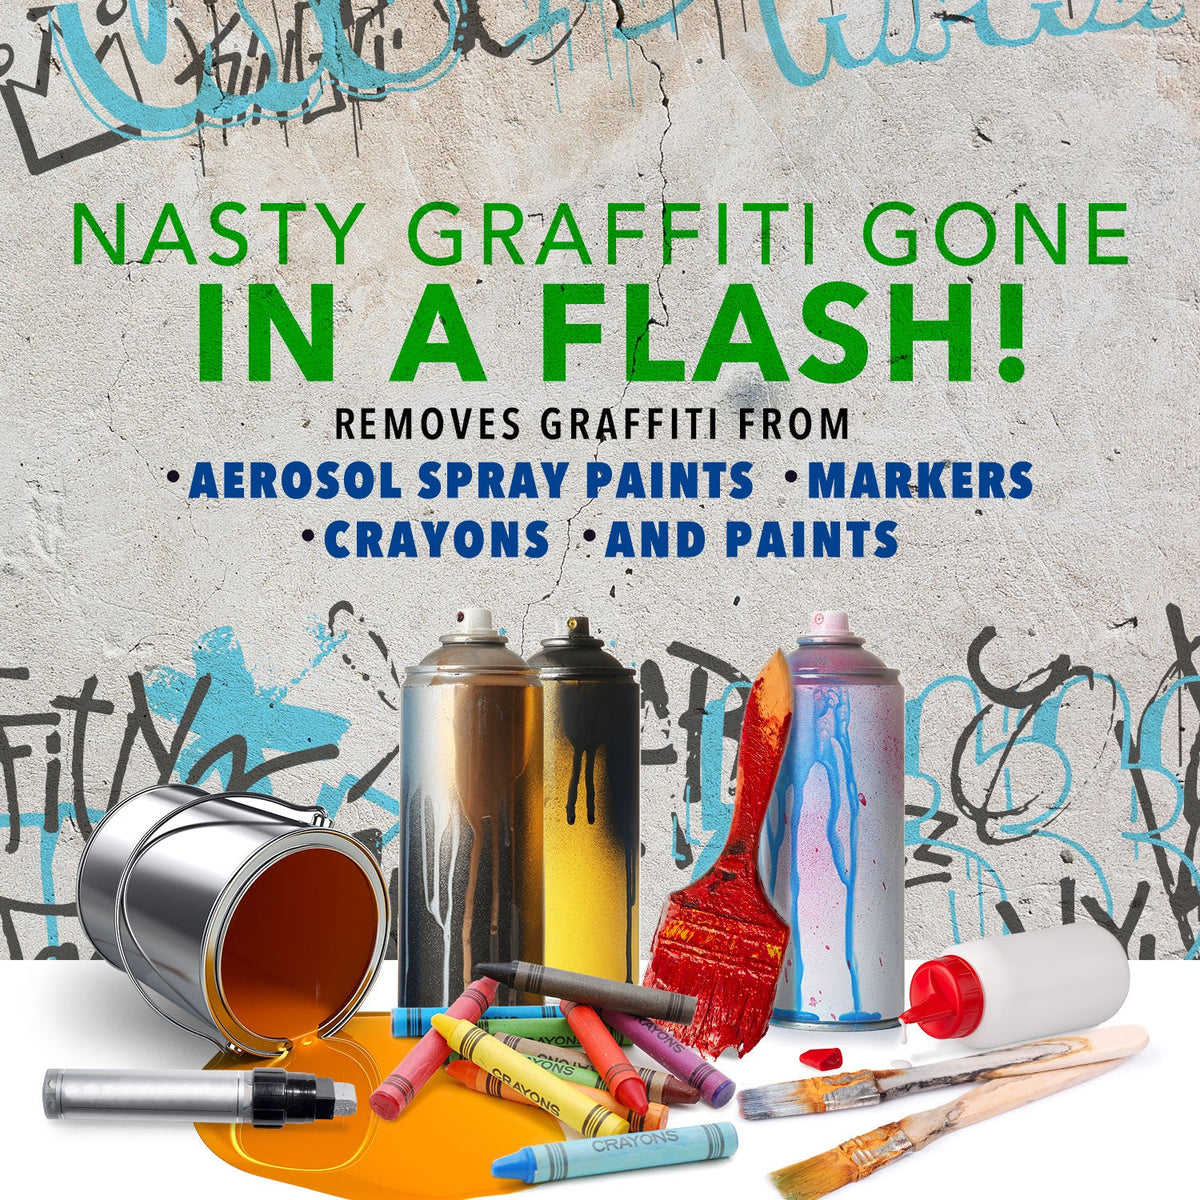 Smart Strip® Auto Graffiti & Adhesive Remover - Muestra de 1/2 Galón -  Dumond